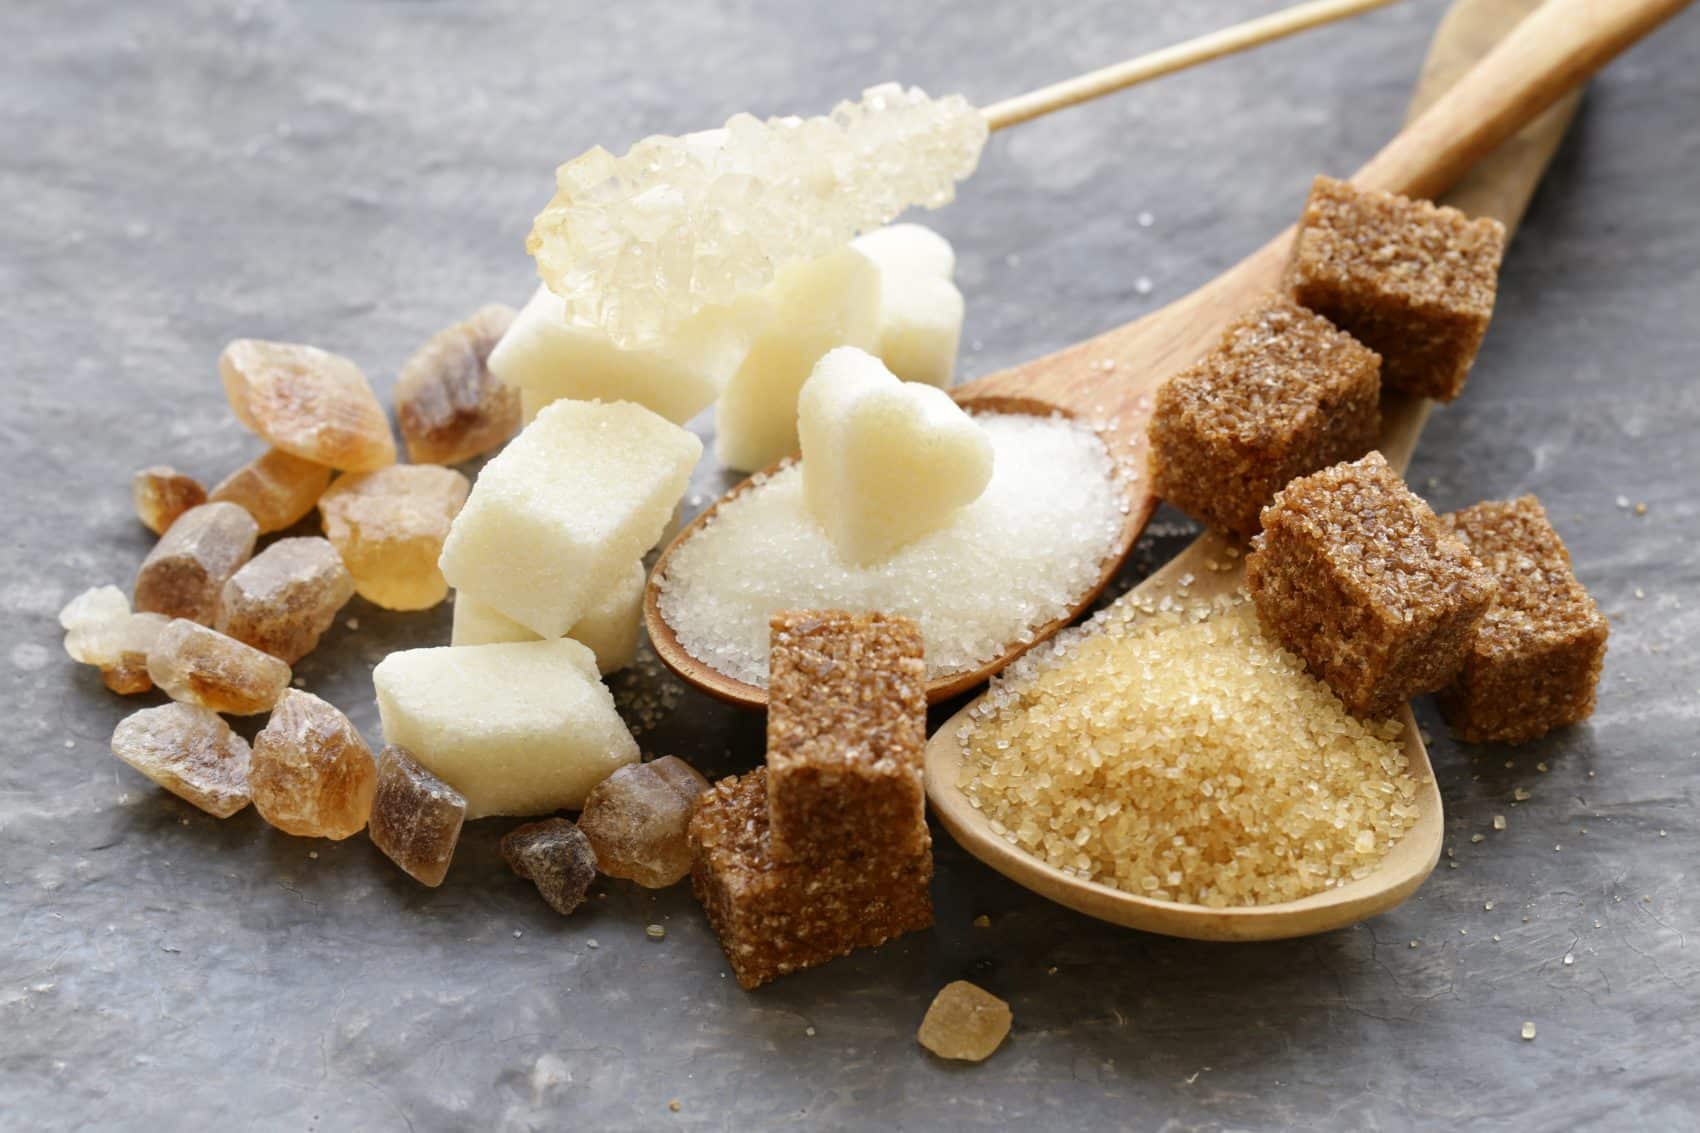 Les différents types de sucres qui sont des aliments interdits pour une insuffisance rénale